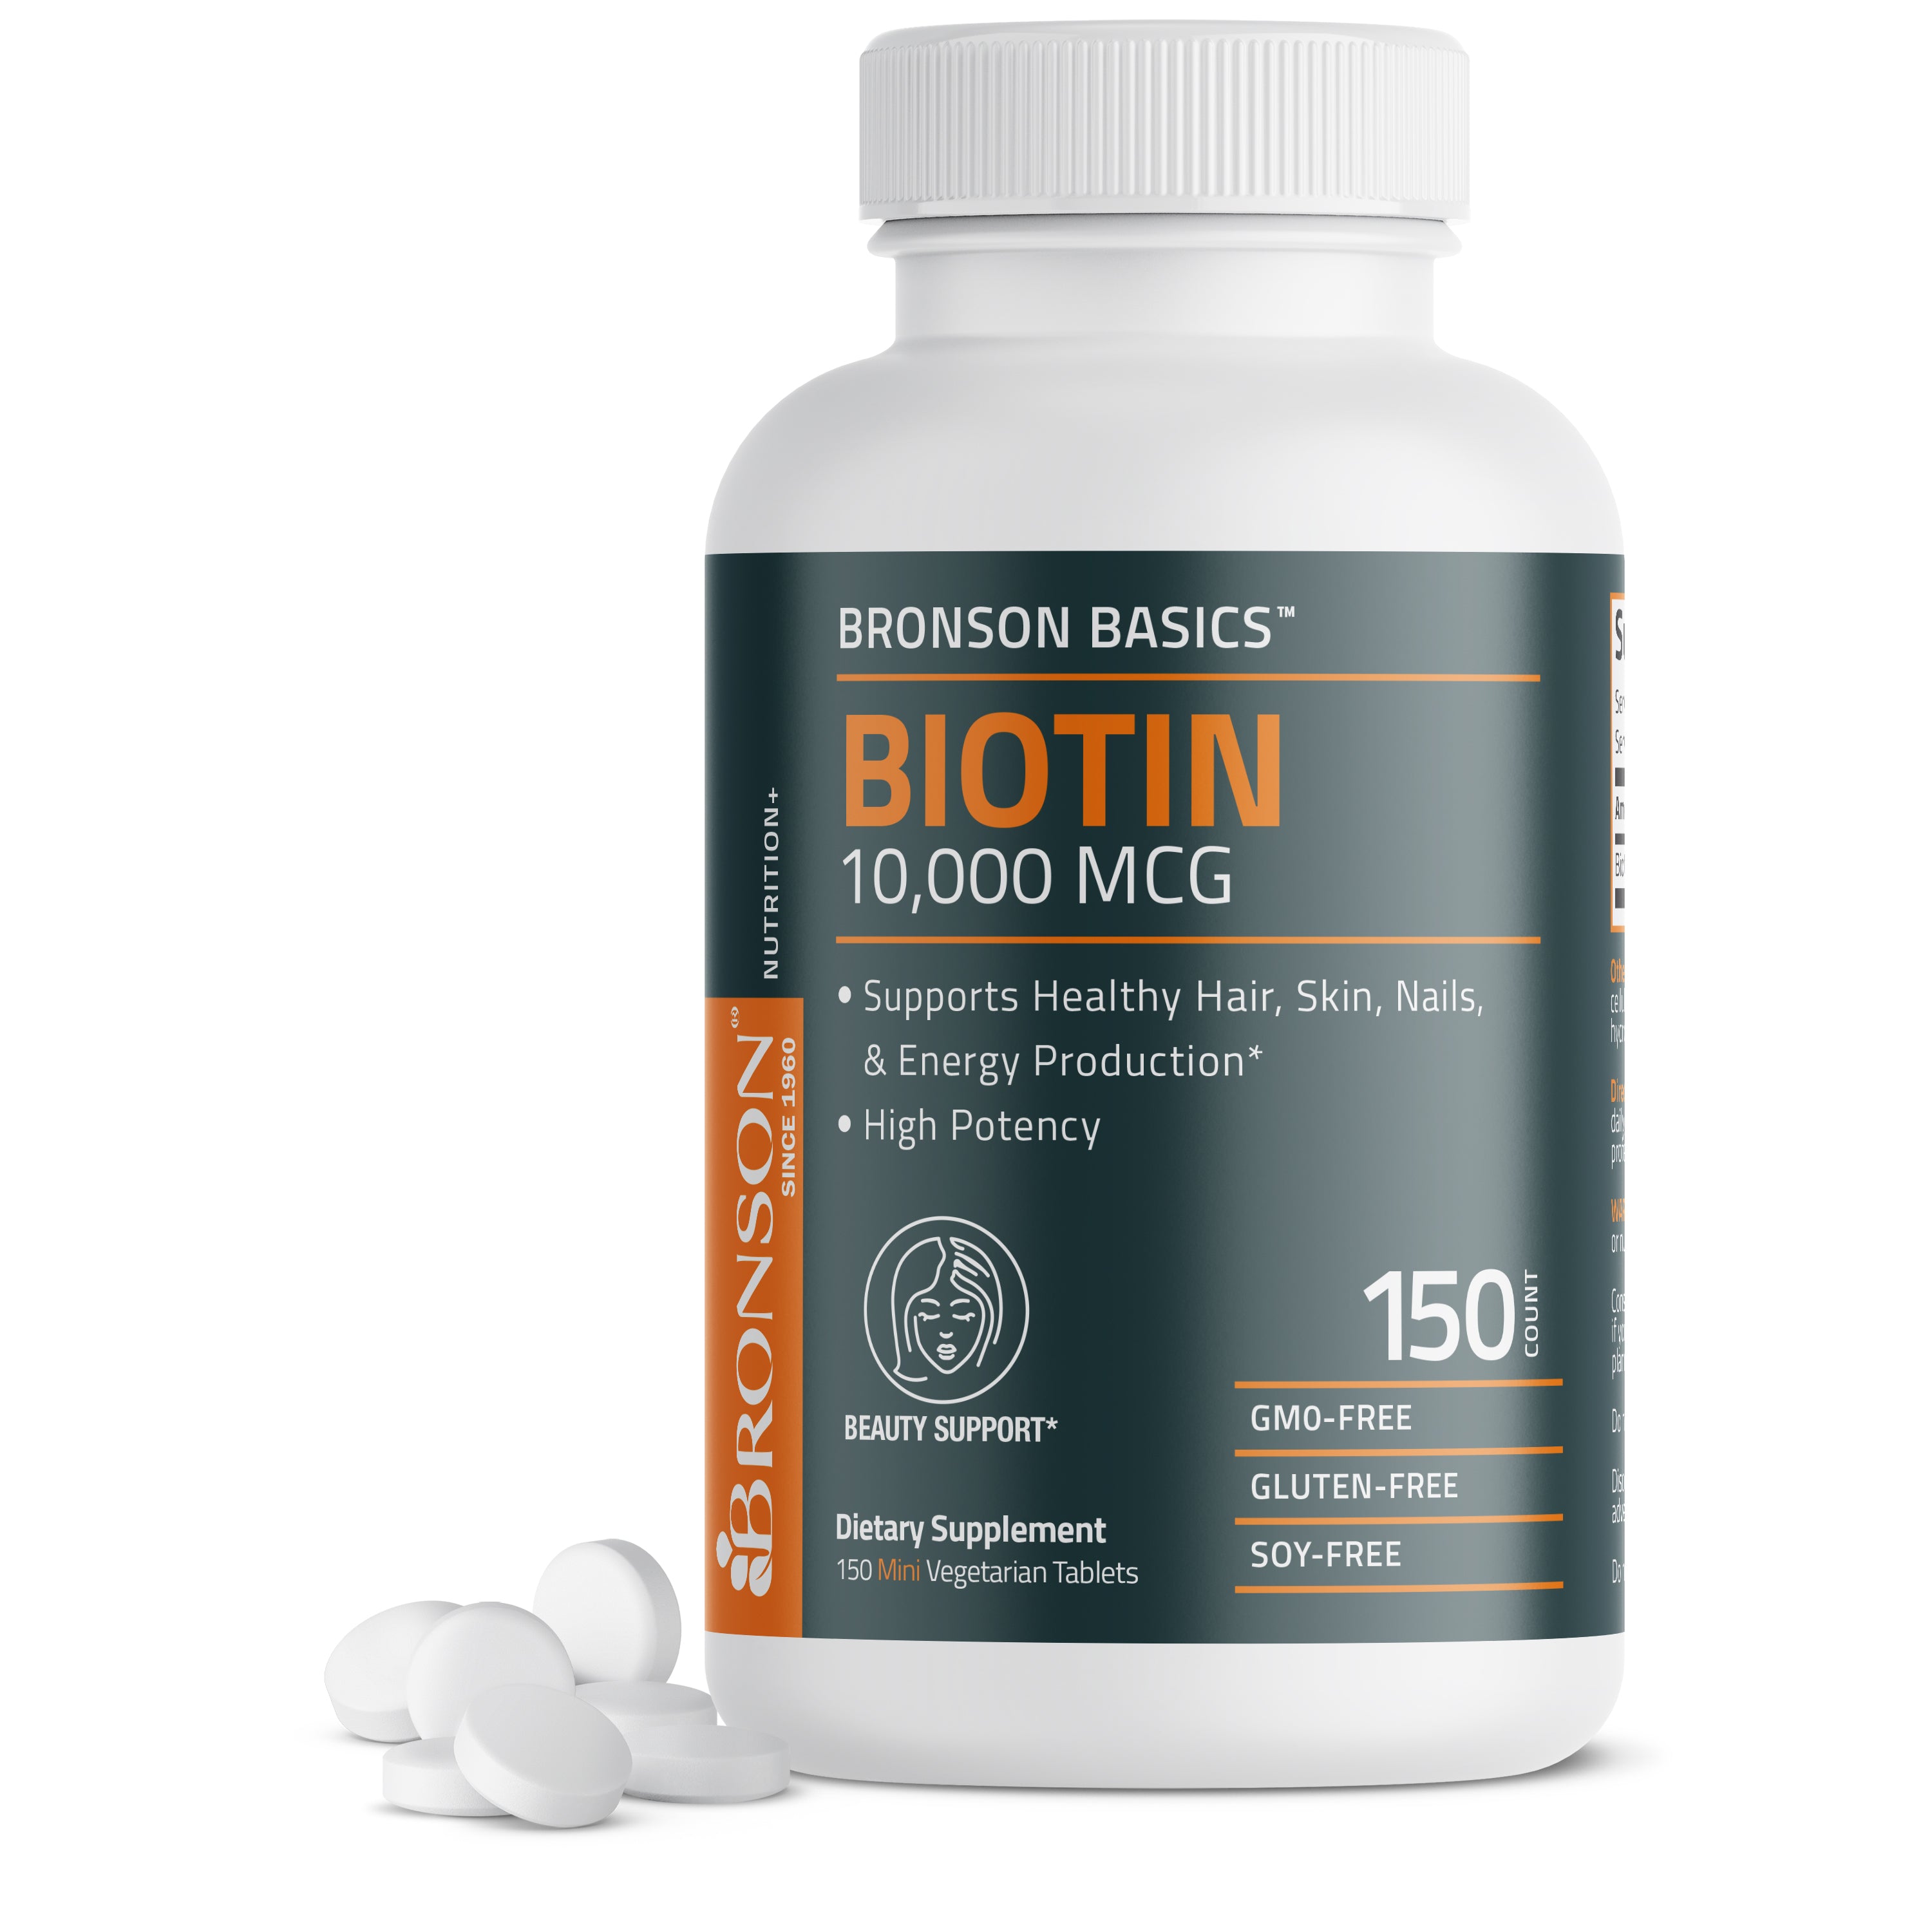 Biotin 10,000 mcg view 1 of 12